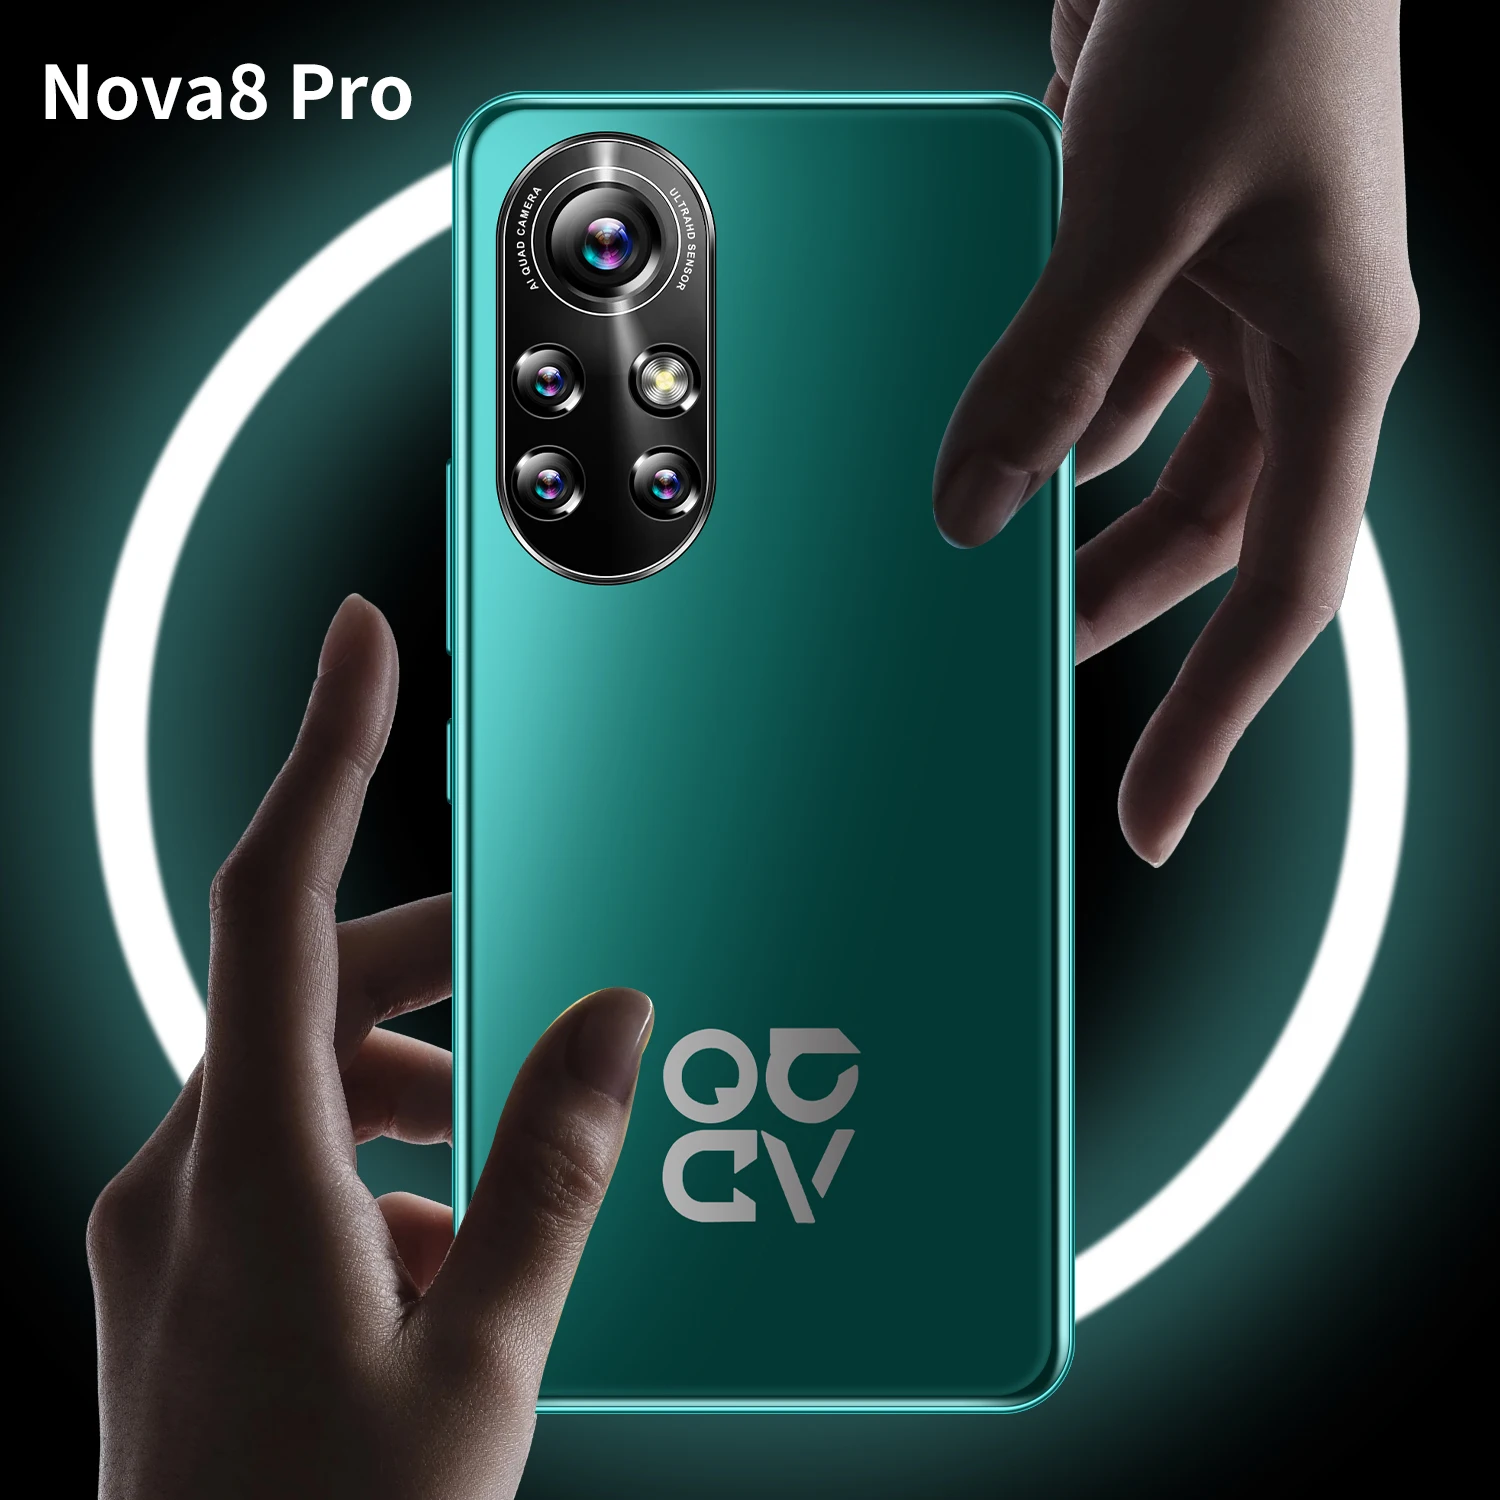 

NO1 Sales Nova8 pro 6.1Inch Face unlock phones 8GB+128GB phones 4G 5G Android 10.0 Smart Mobile phones, Black,blue,green